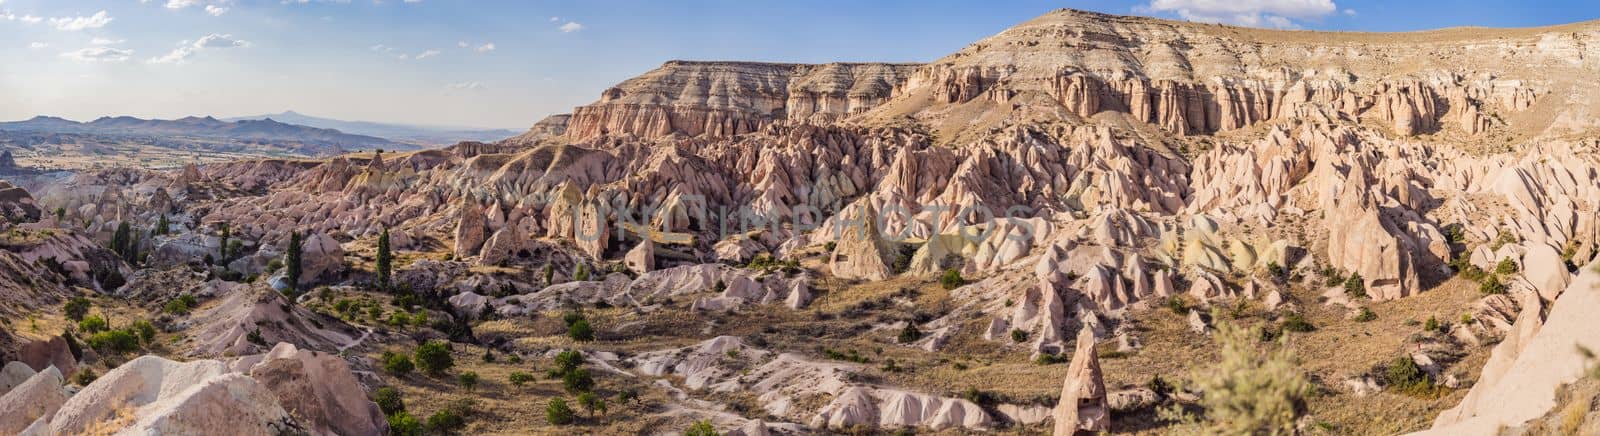 Meskendir Valley Pink Valley. Cappadocia Turkey. Travel to Turkey concept.